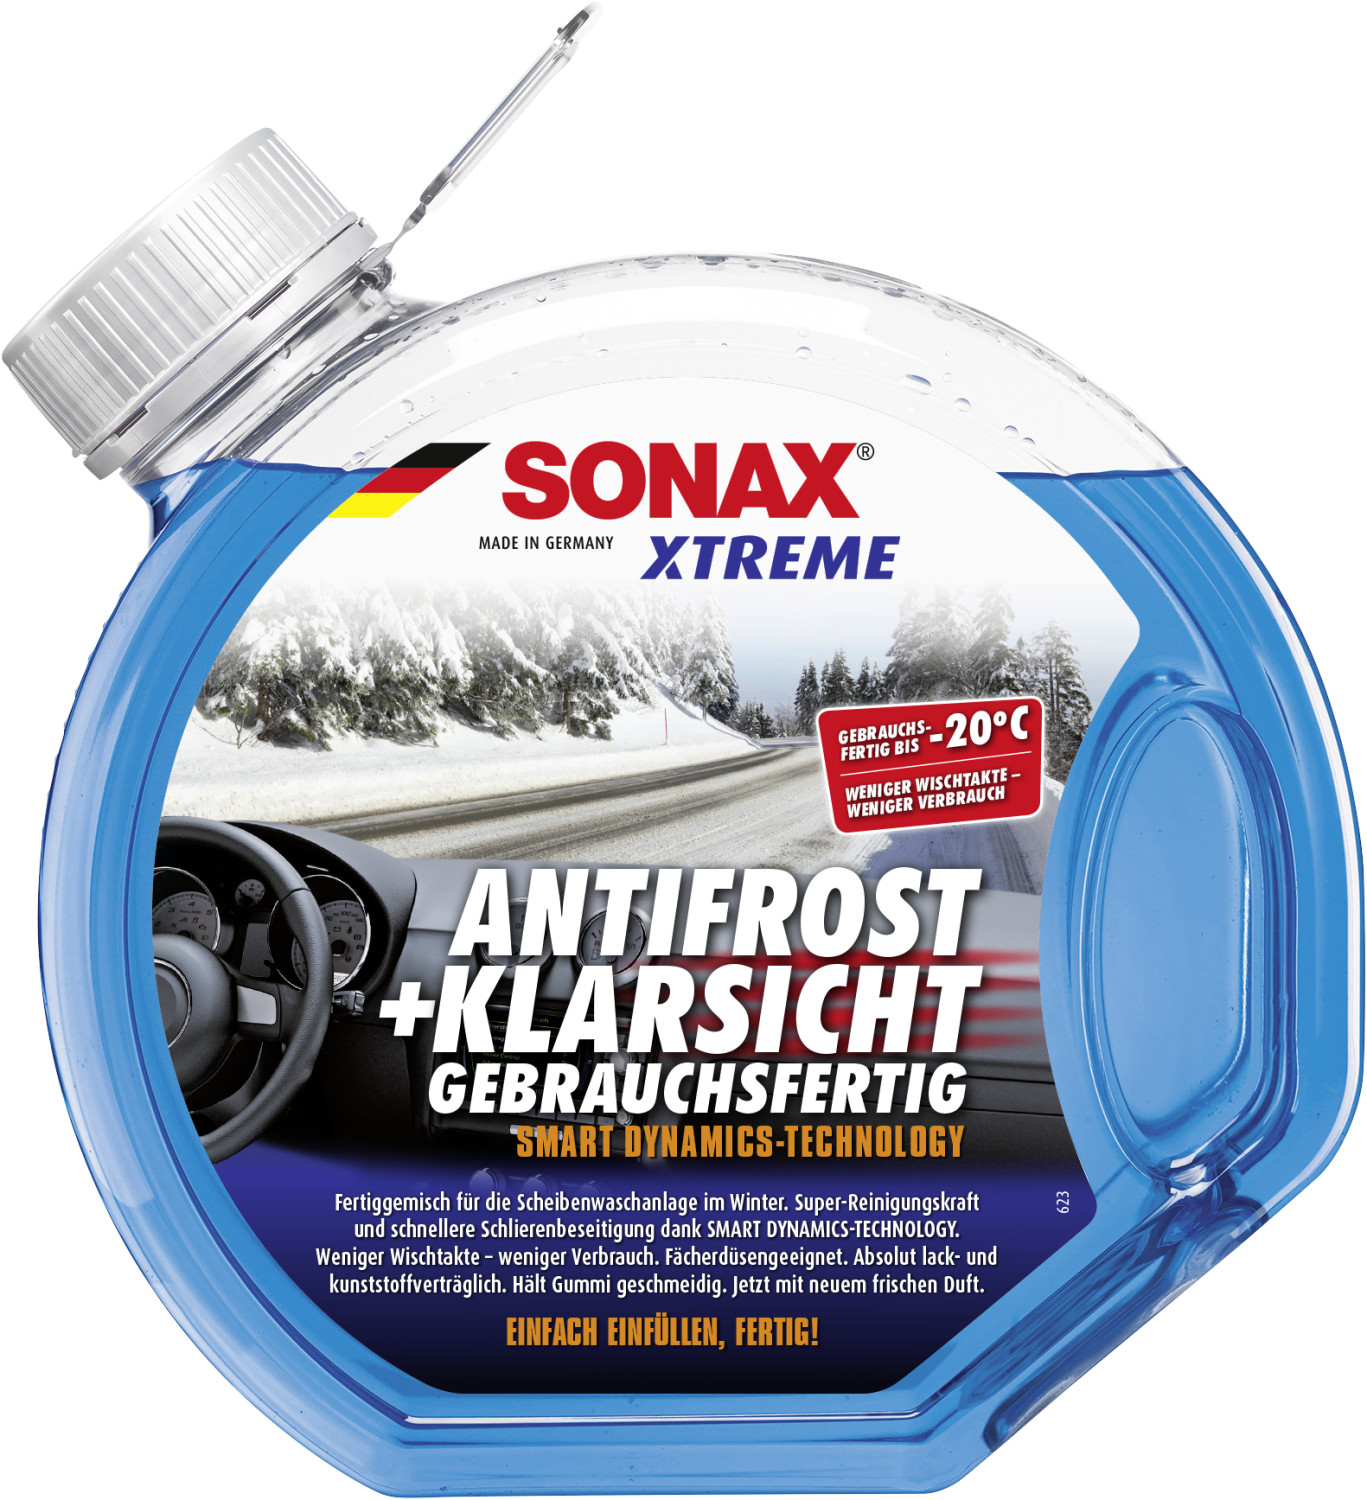 Sonax Xtreme AntiFrost+KlarSicht bis -20°C (3 l) ab 6,97 €